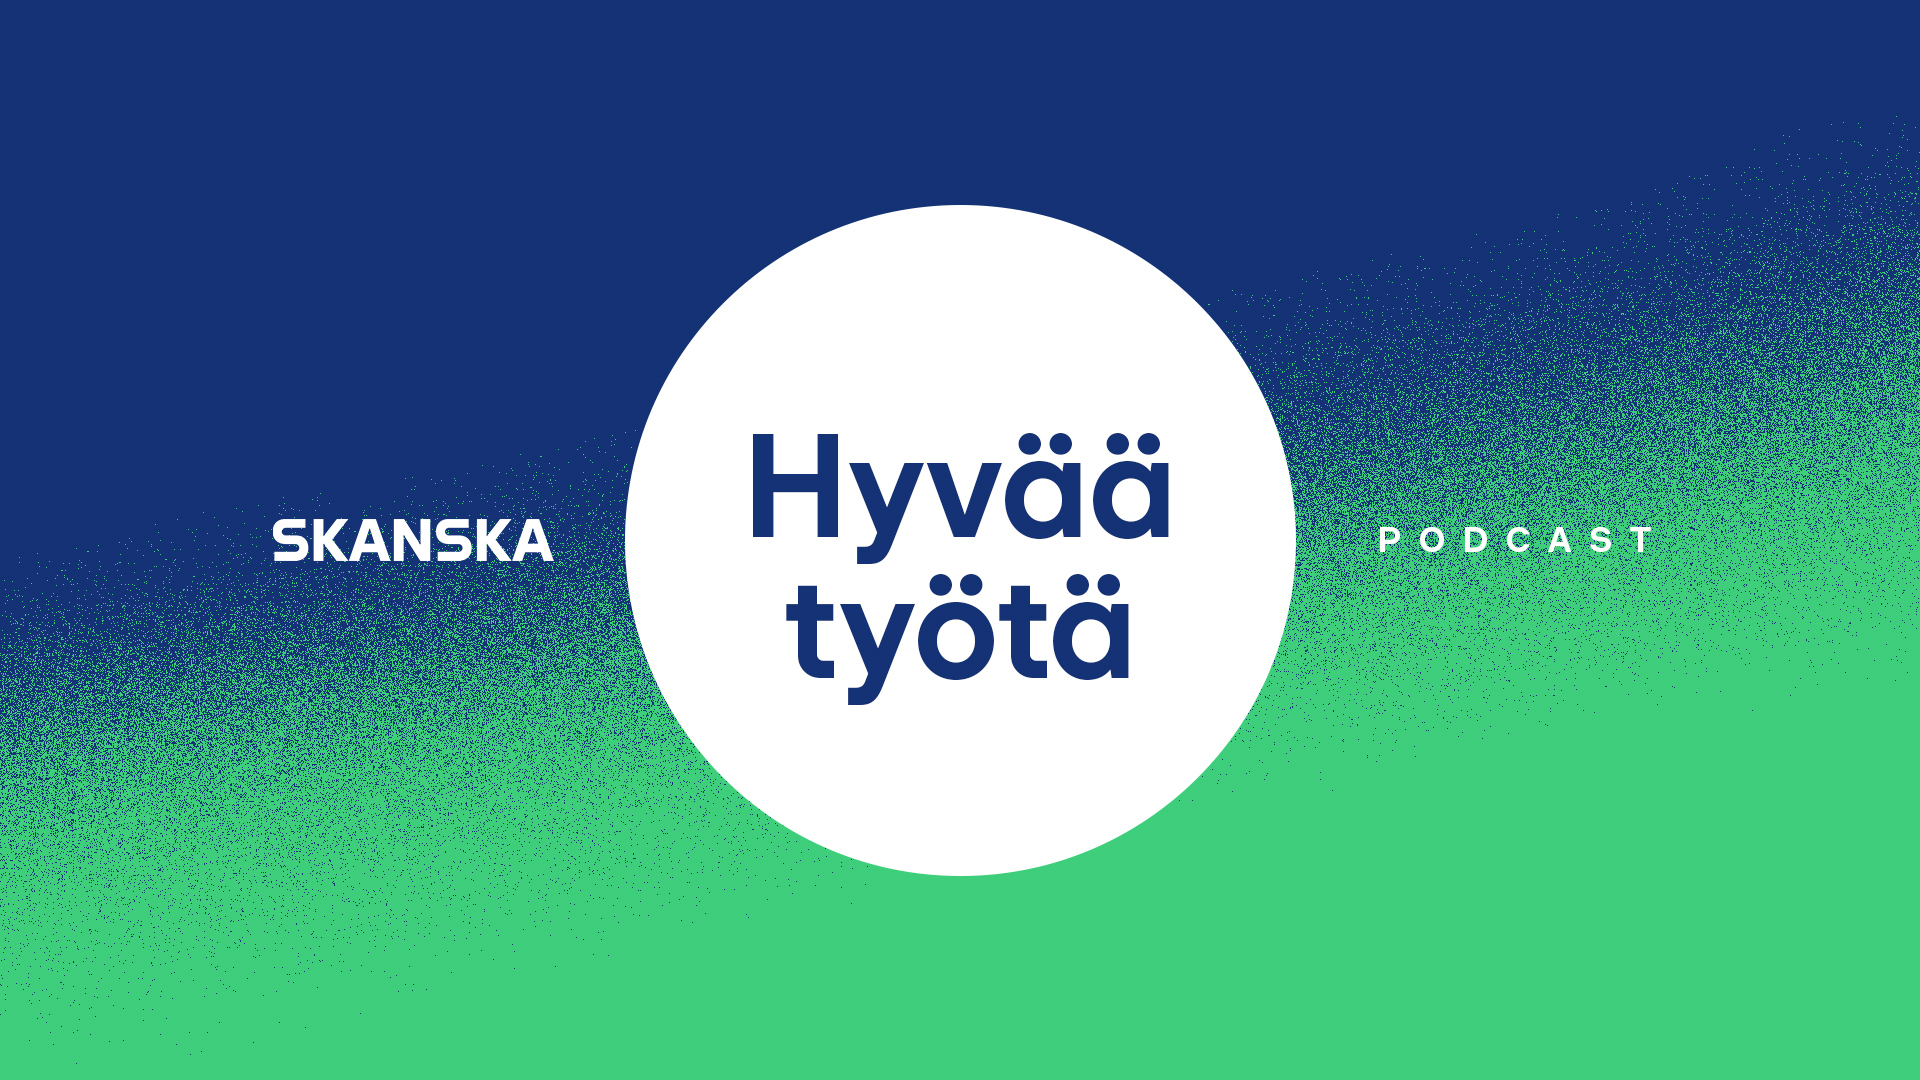 SKANSKA_Hyvaa_tyota_nettisivut_cover_9x16_5